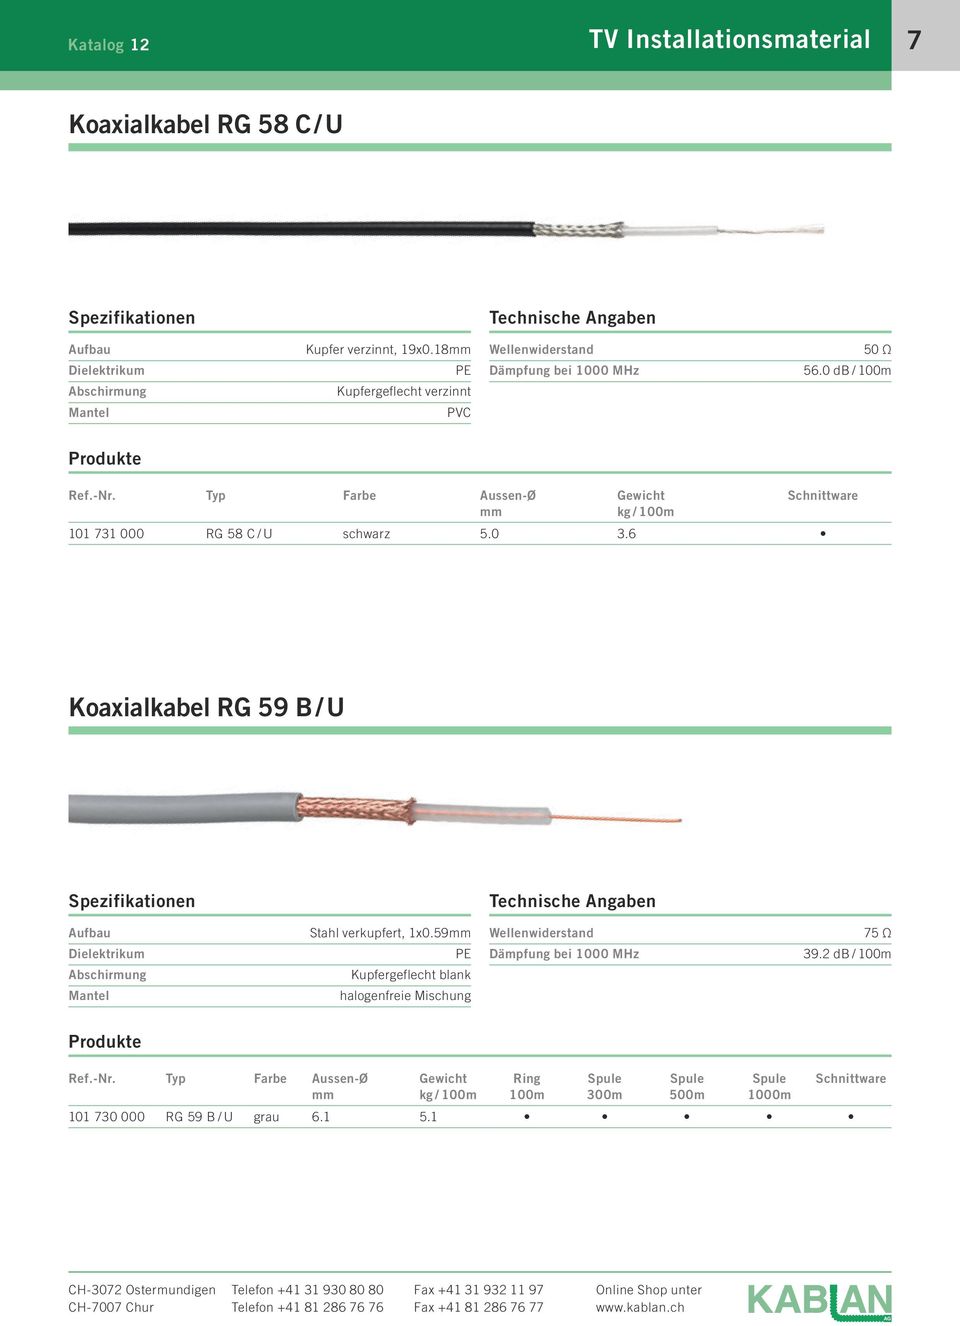 0 db / 100m Produkte Farbe Aussen-Ø mm Gewicht kg / 100m Schnittware 101 731 000 RG 58 C / U schwarz 5.0 3.